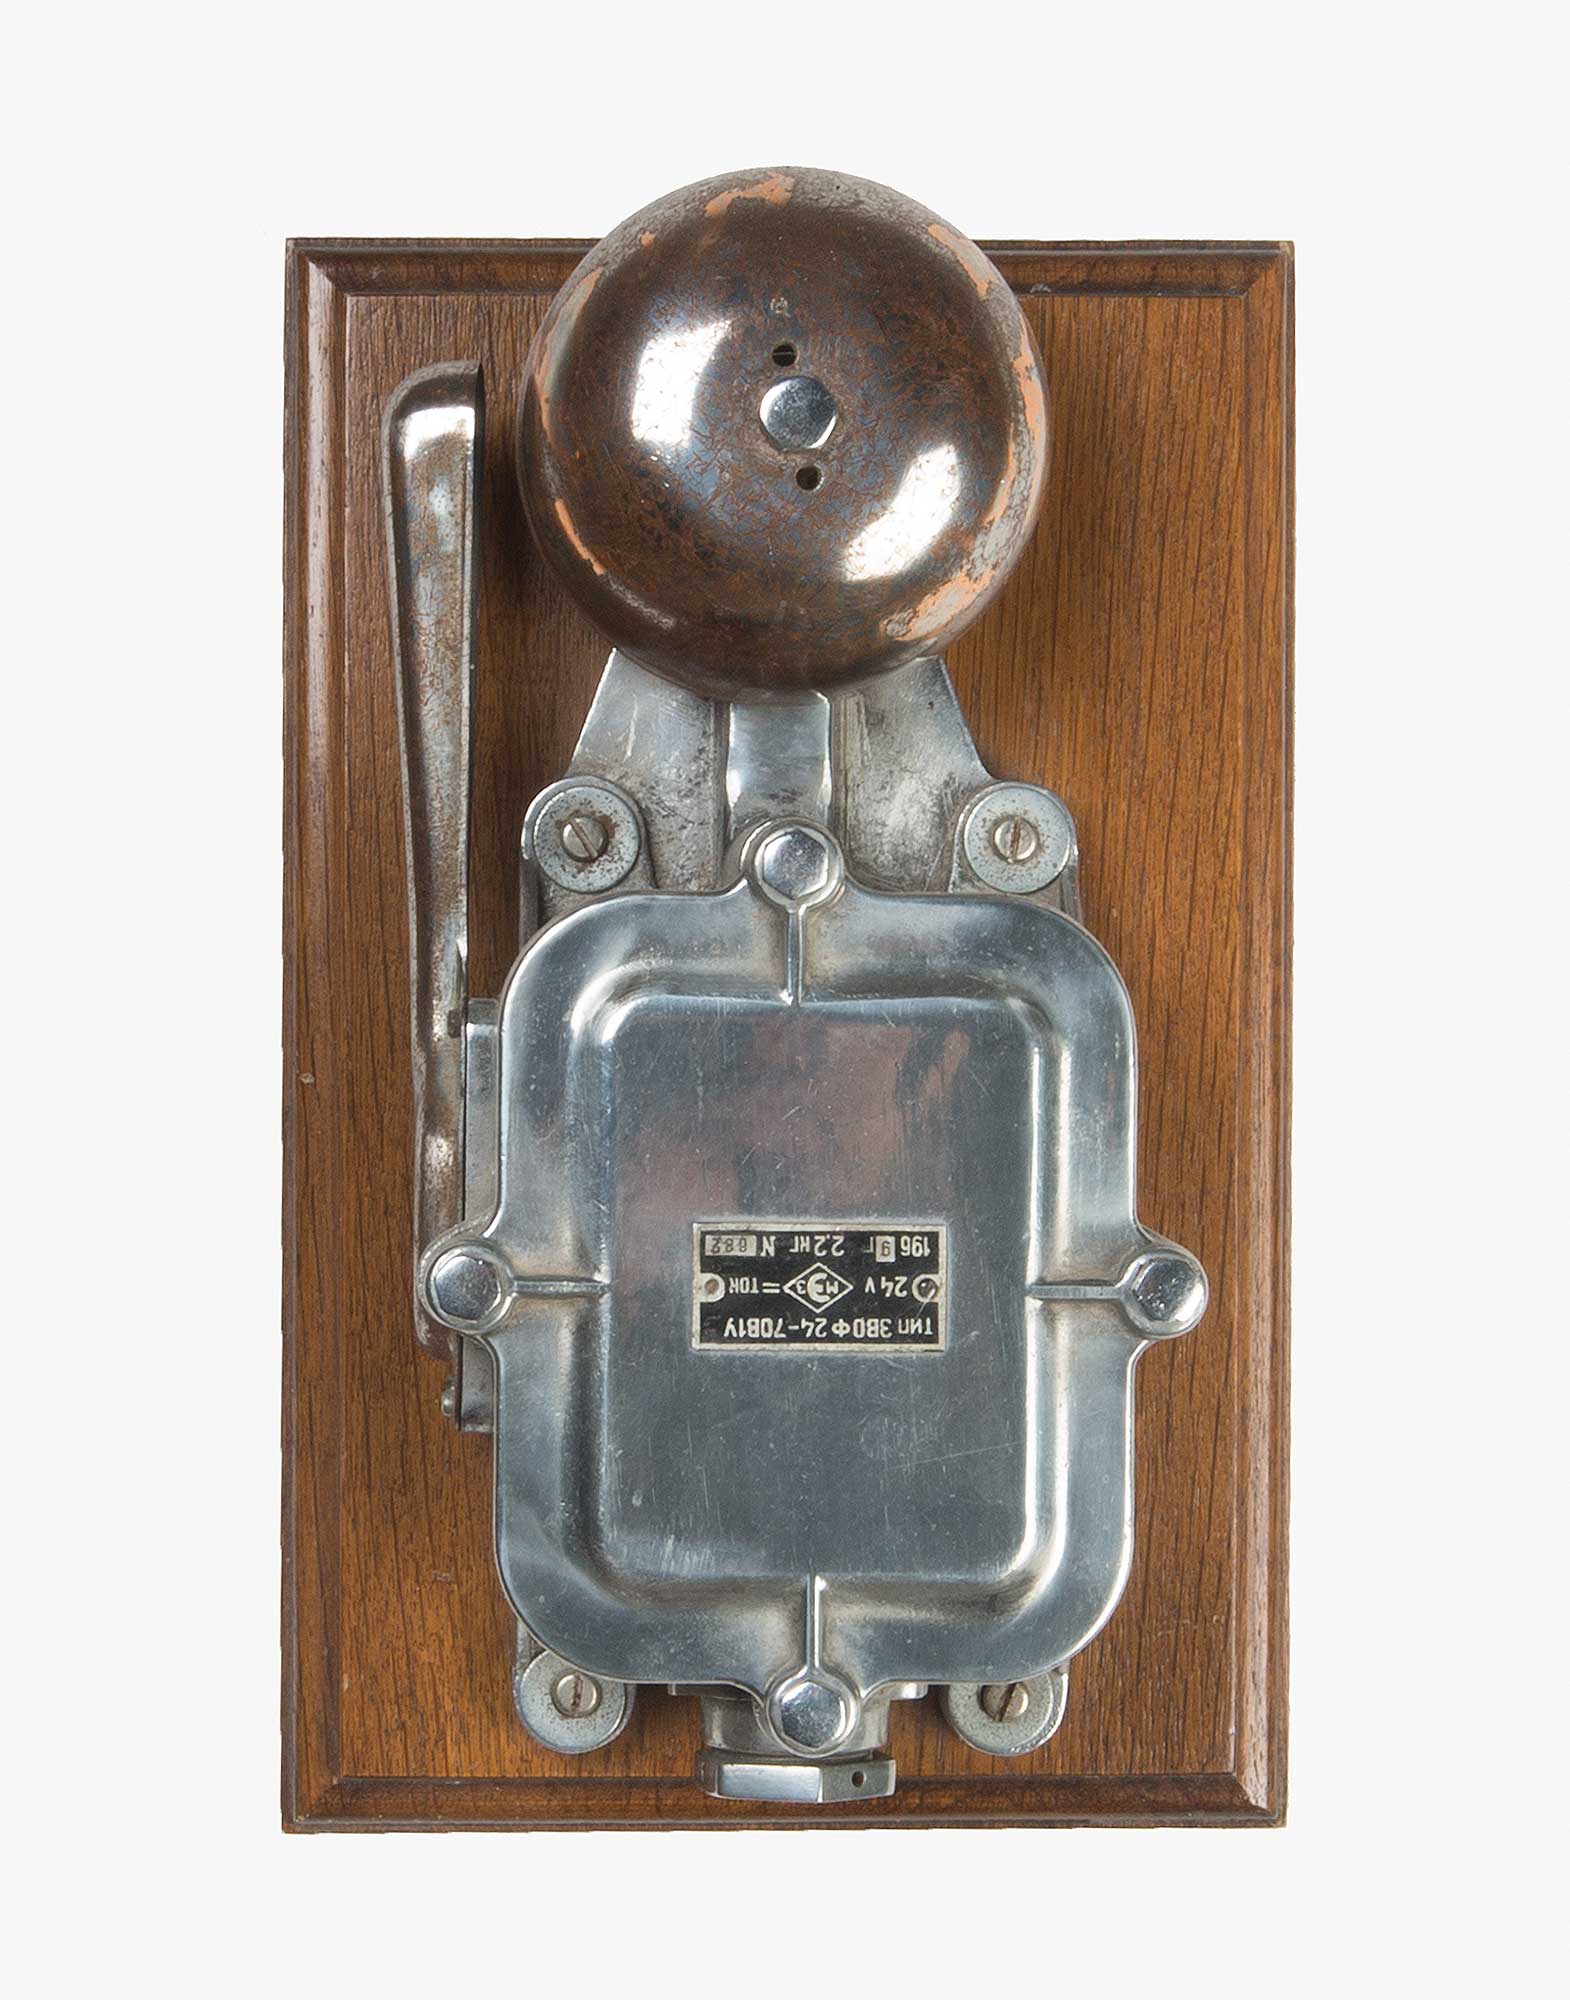 Antique English Railroad Alarm